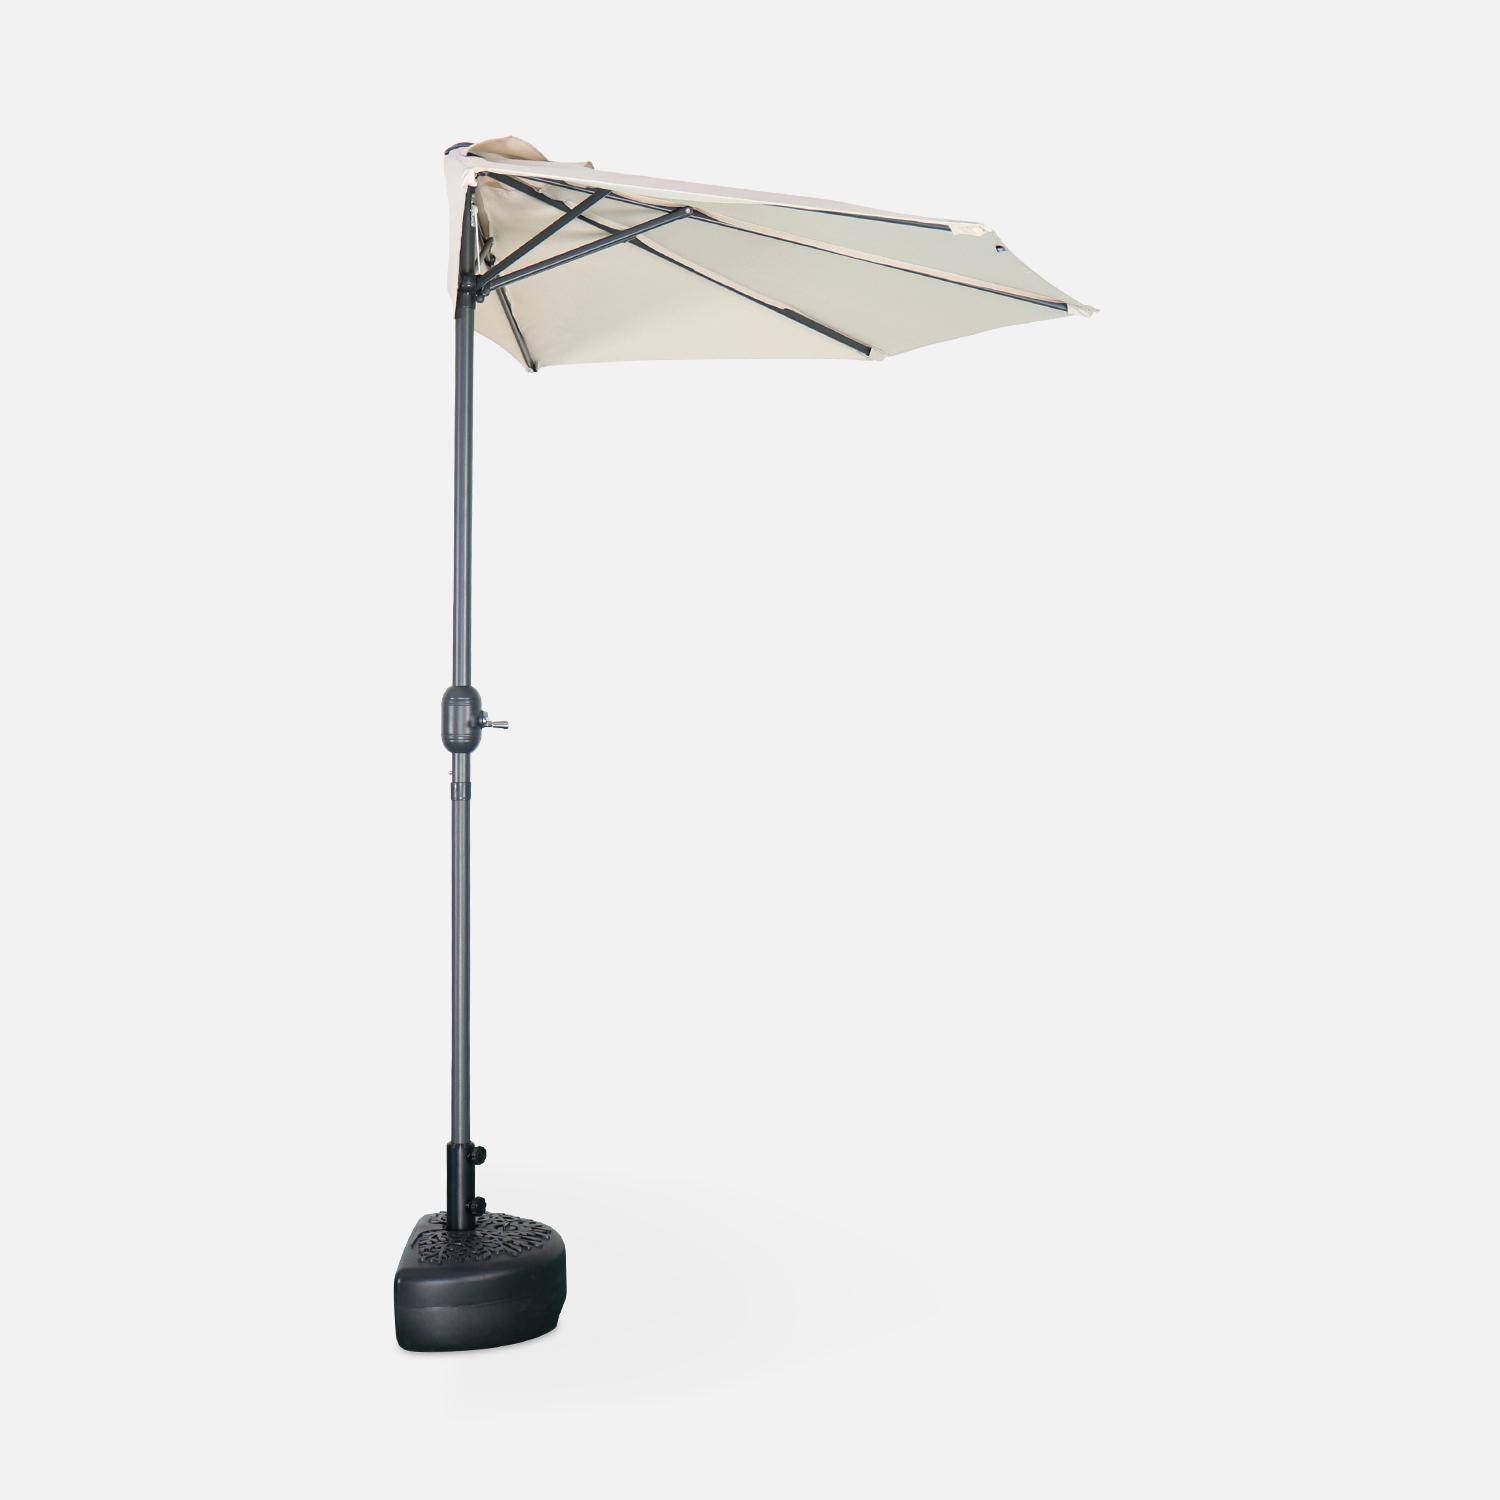  Parasol para balcón Ø250cm - CALVI - Medio parasol recto, mástil de aluminio con manivela, tejido arena Photo3